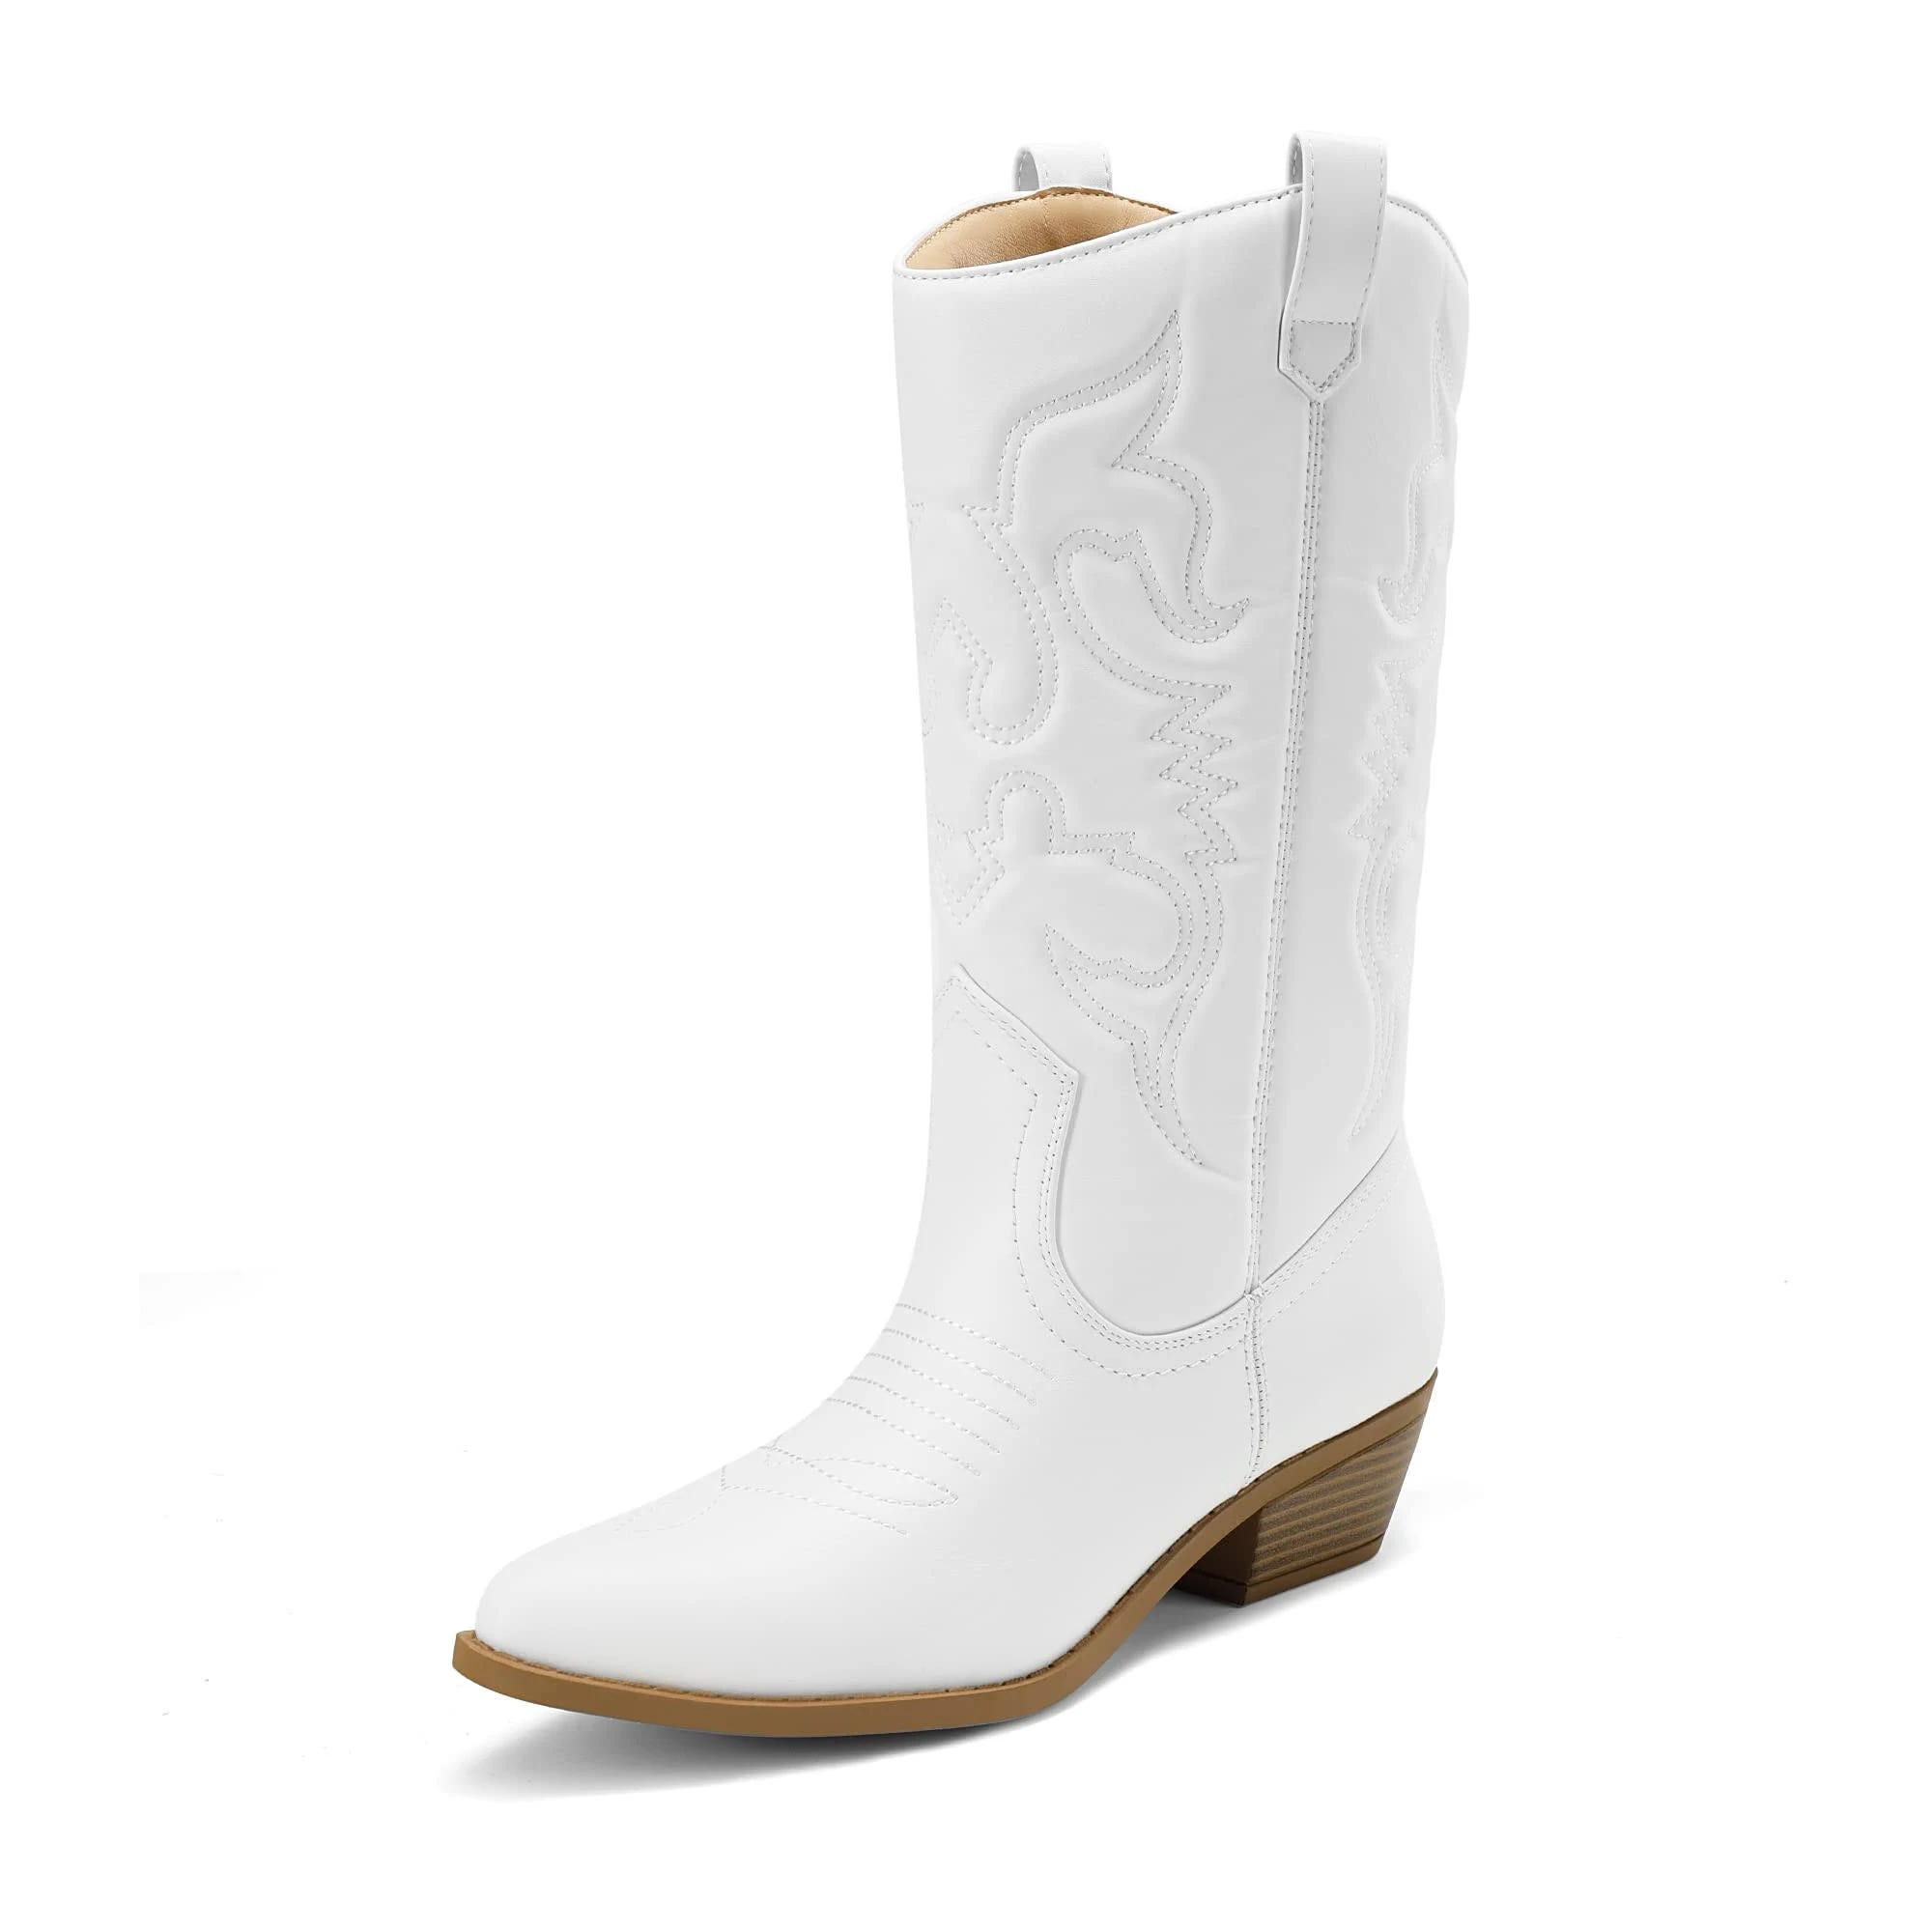 Stylish White Heeled Cowboy Boots for Women | Image